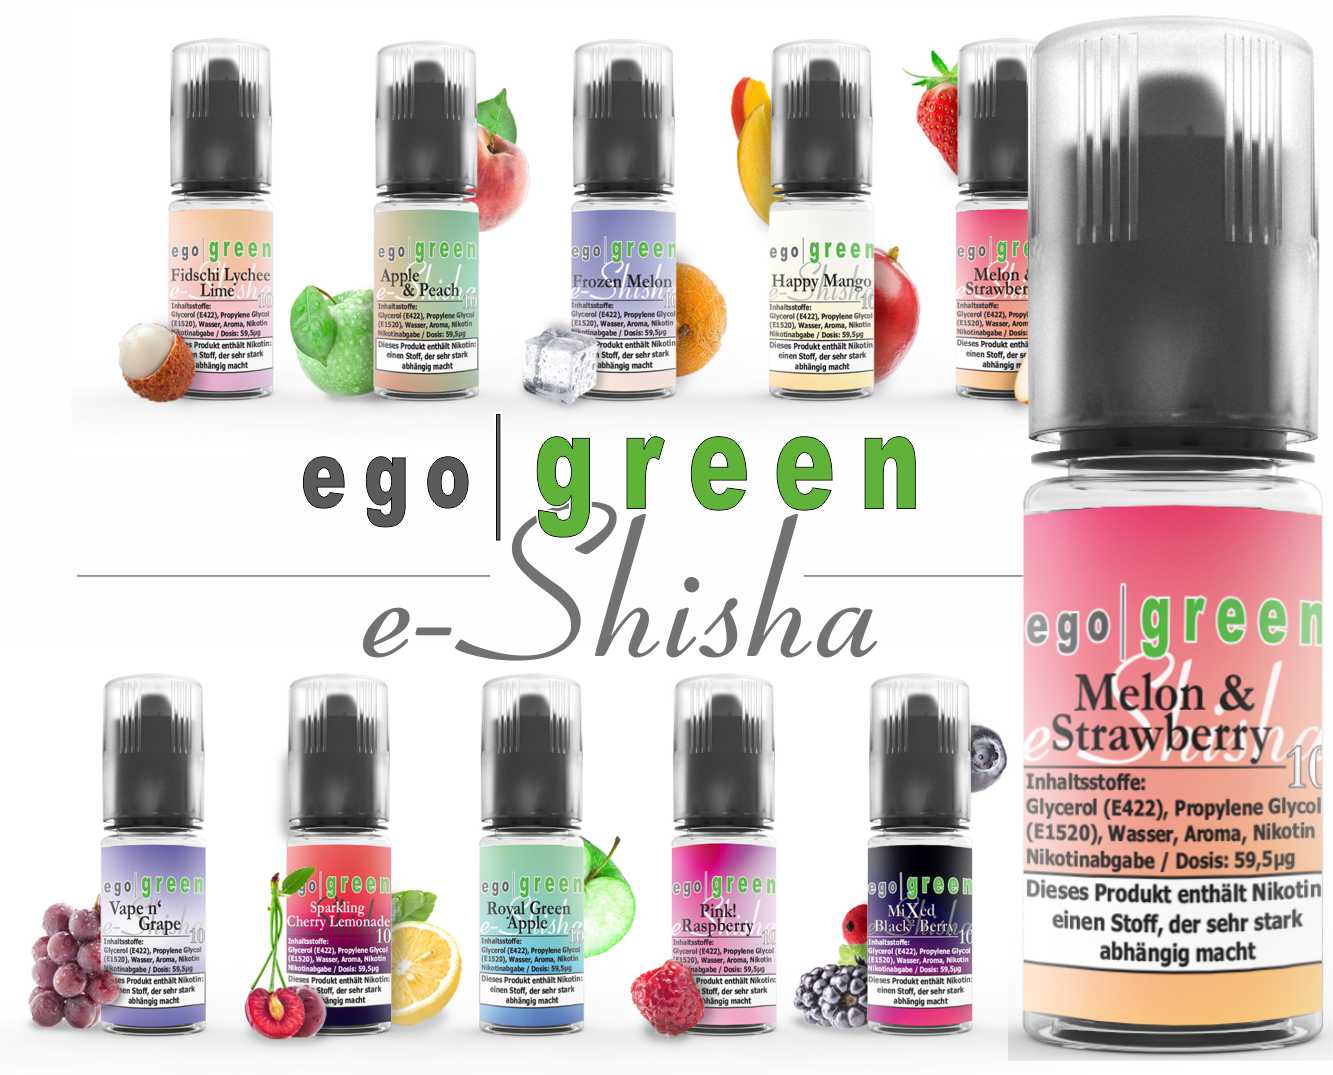 egogreen Melon & Strawberry e-Shisha Nikotinsalz Liquid online kaufen